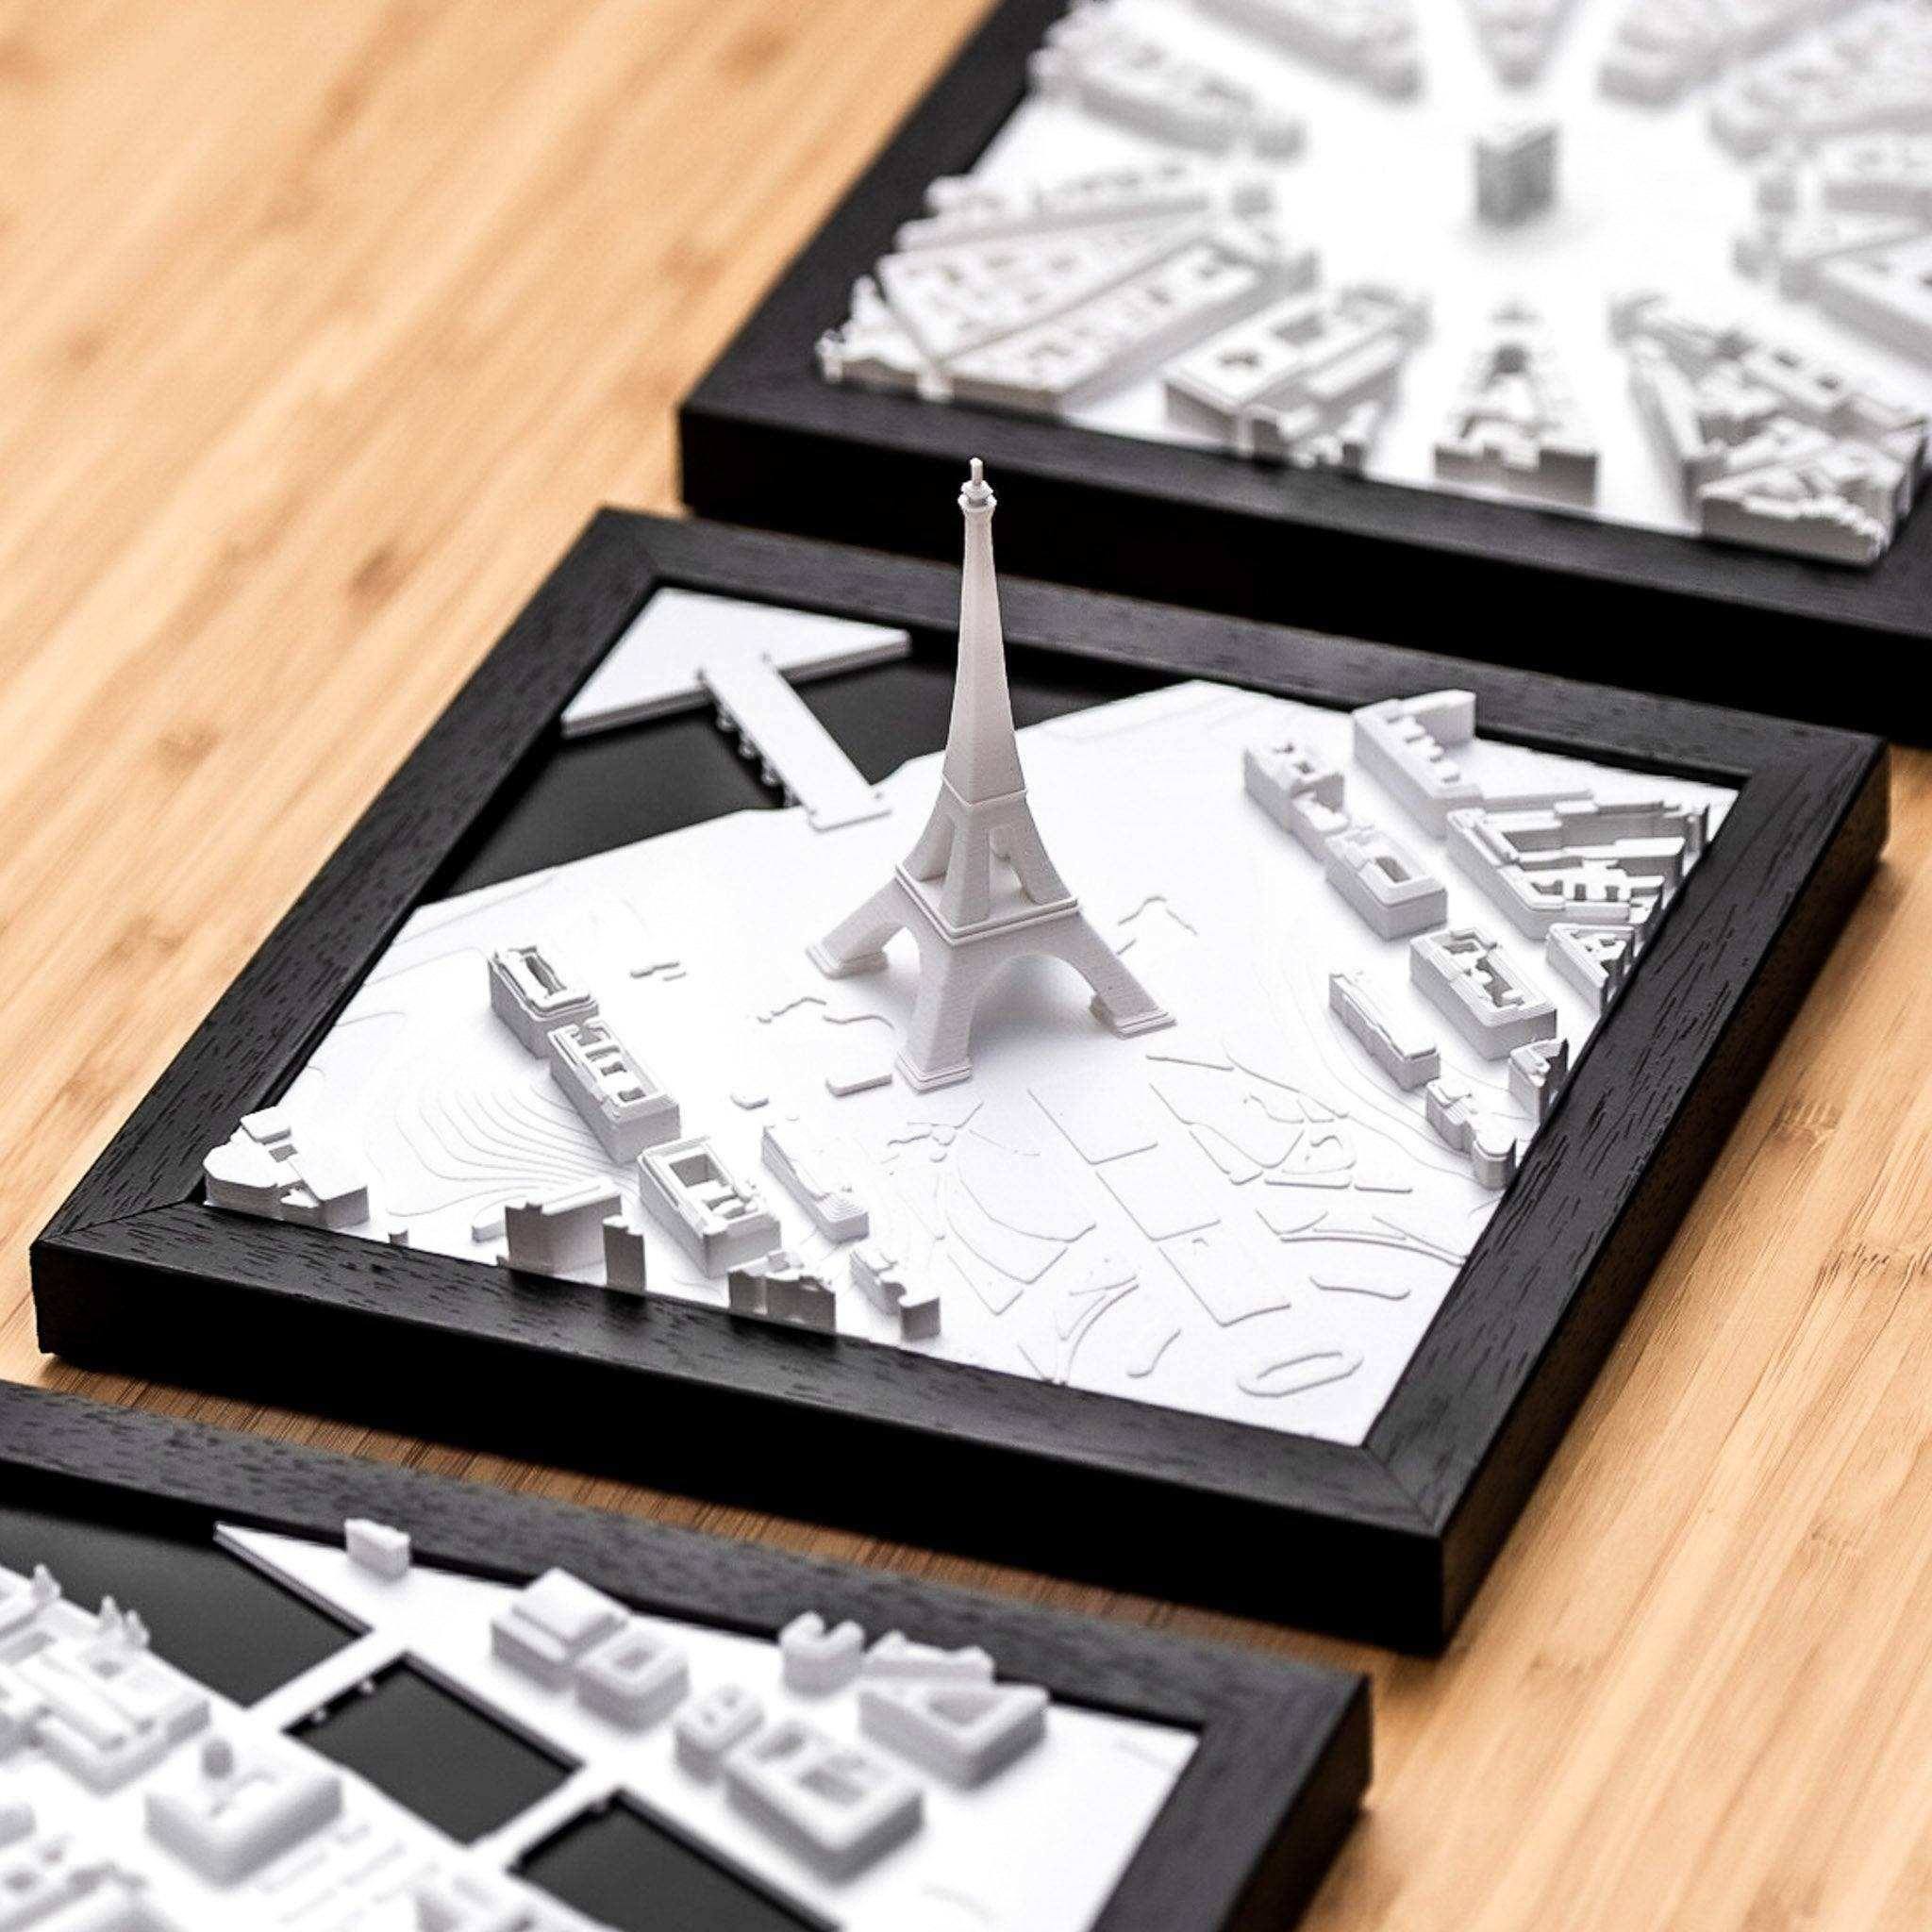 Paris 3D City Model Cube, Europe - CITYFRAMES